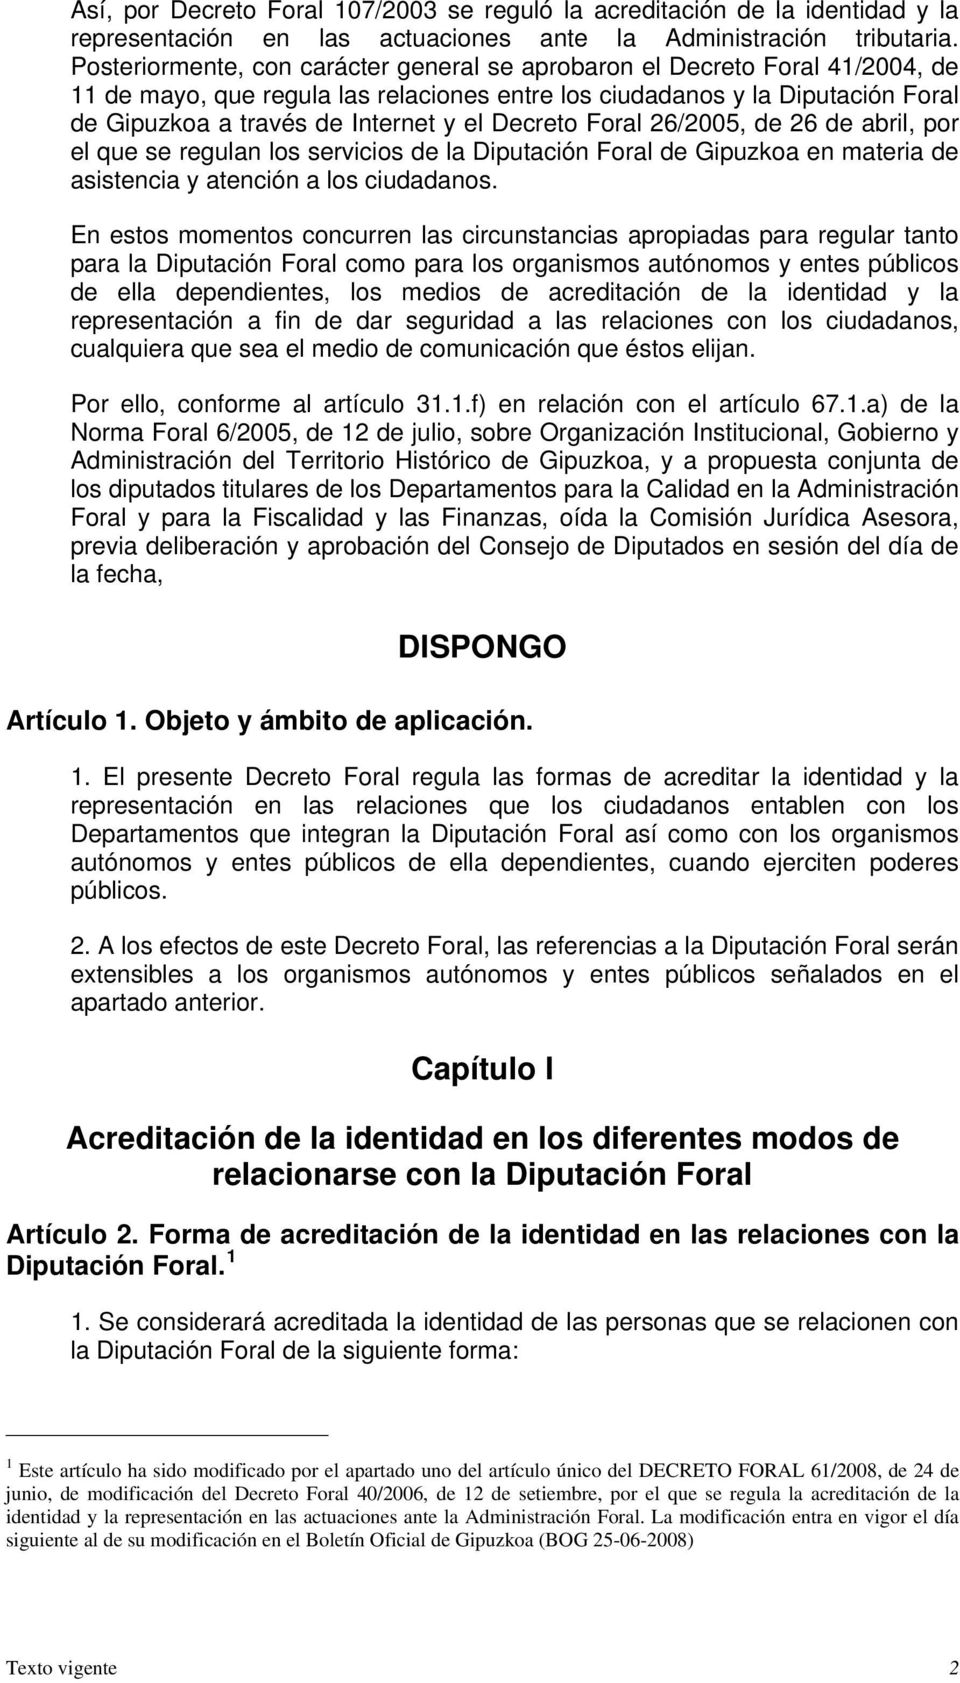 Decreto Foral 26/2005, de 26 de abril, por el que se regulan los servicios de la Diputación Foral de Gipuzkoa en materia de asistencia y atención a los ciudadanos.